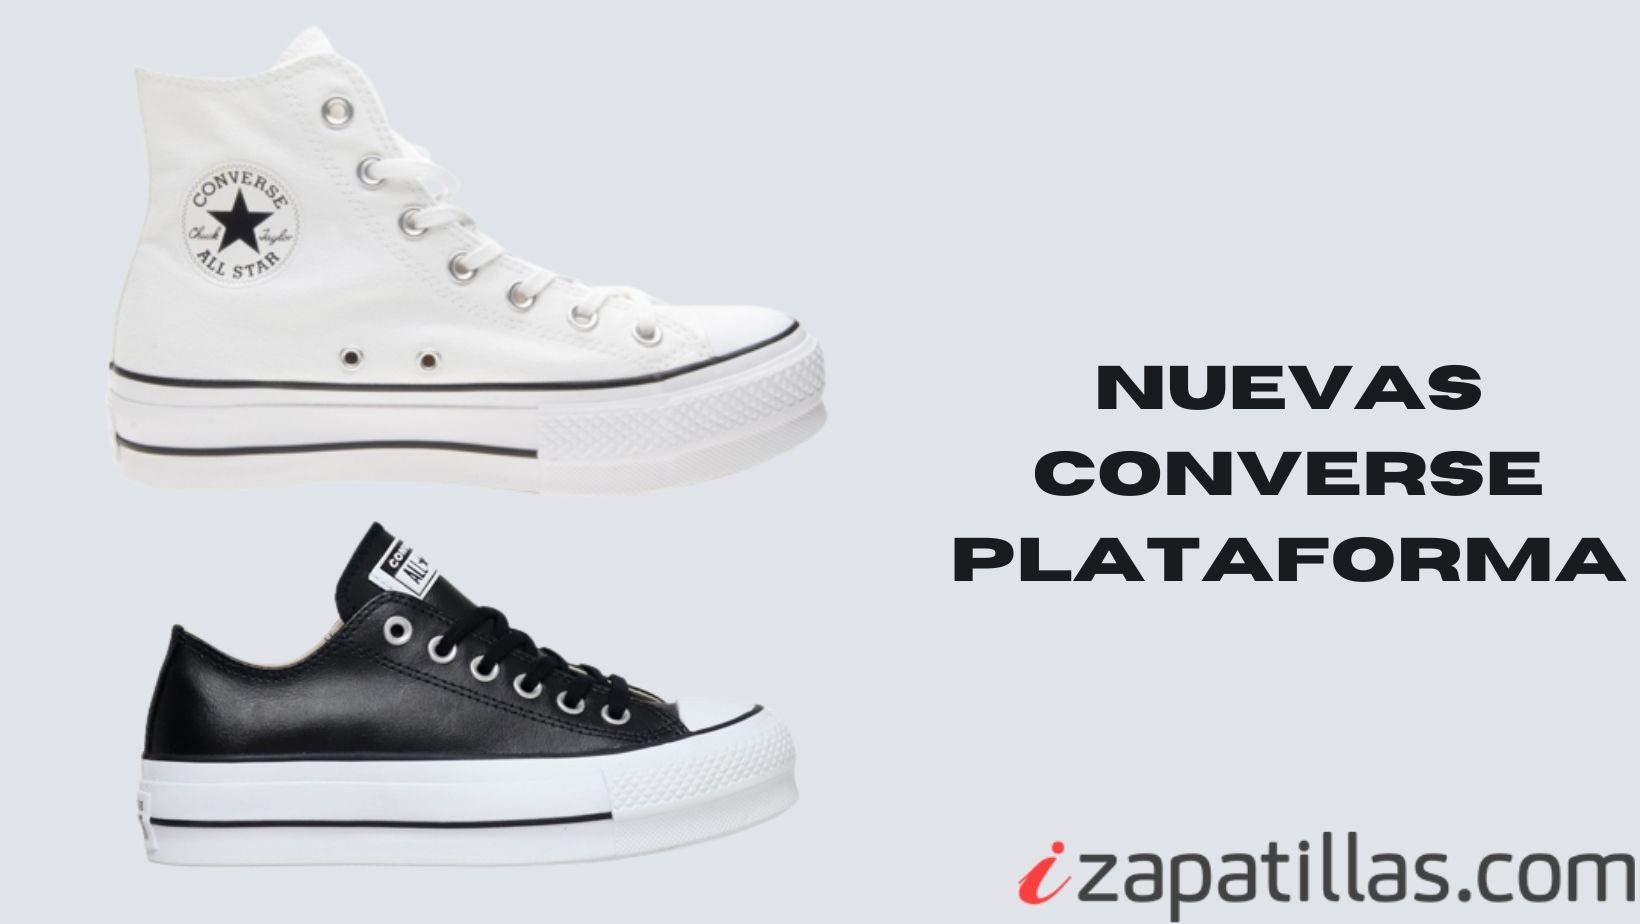 Zapatillas Contrareembolso // Comprar Zapatillas Converse Contrareembolso // Converse Contrareembolso Online.